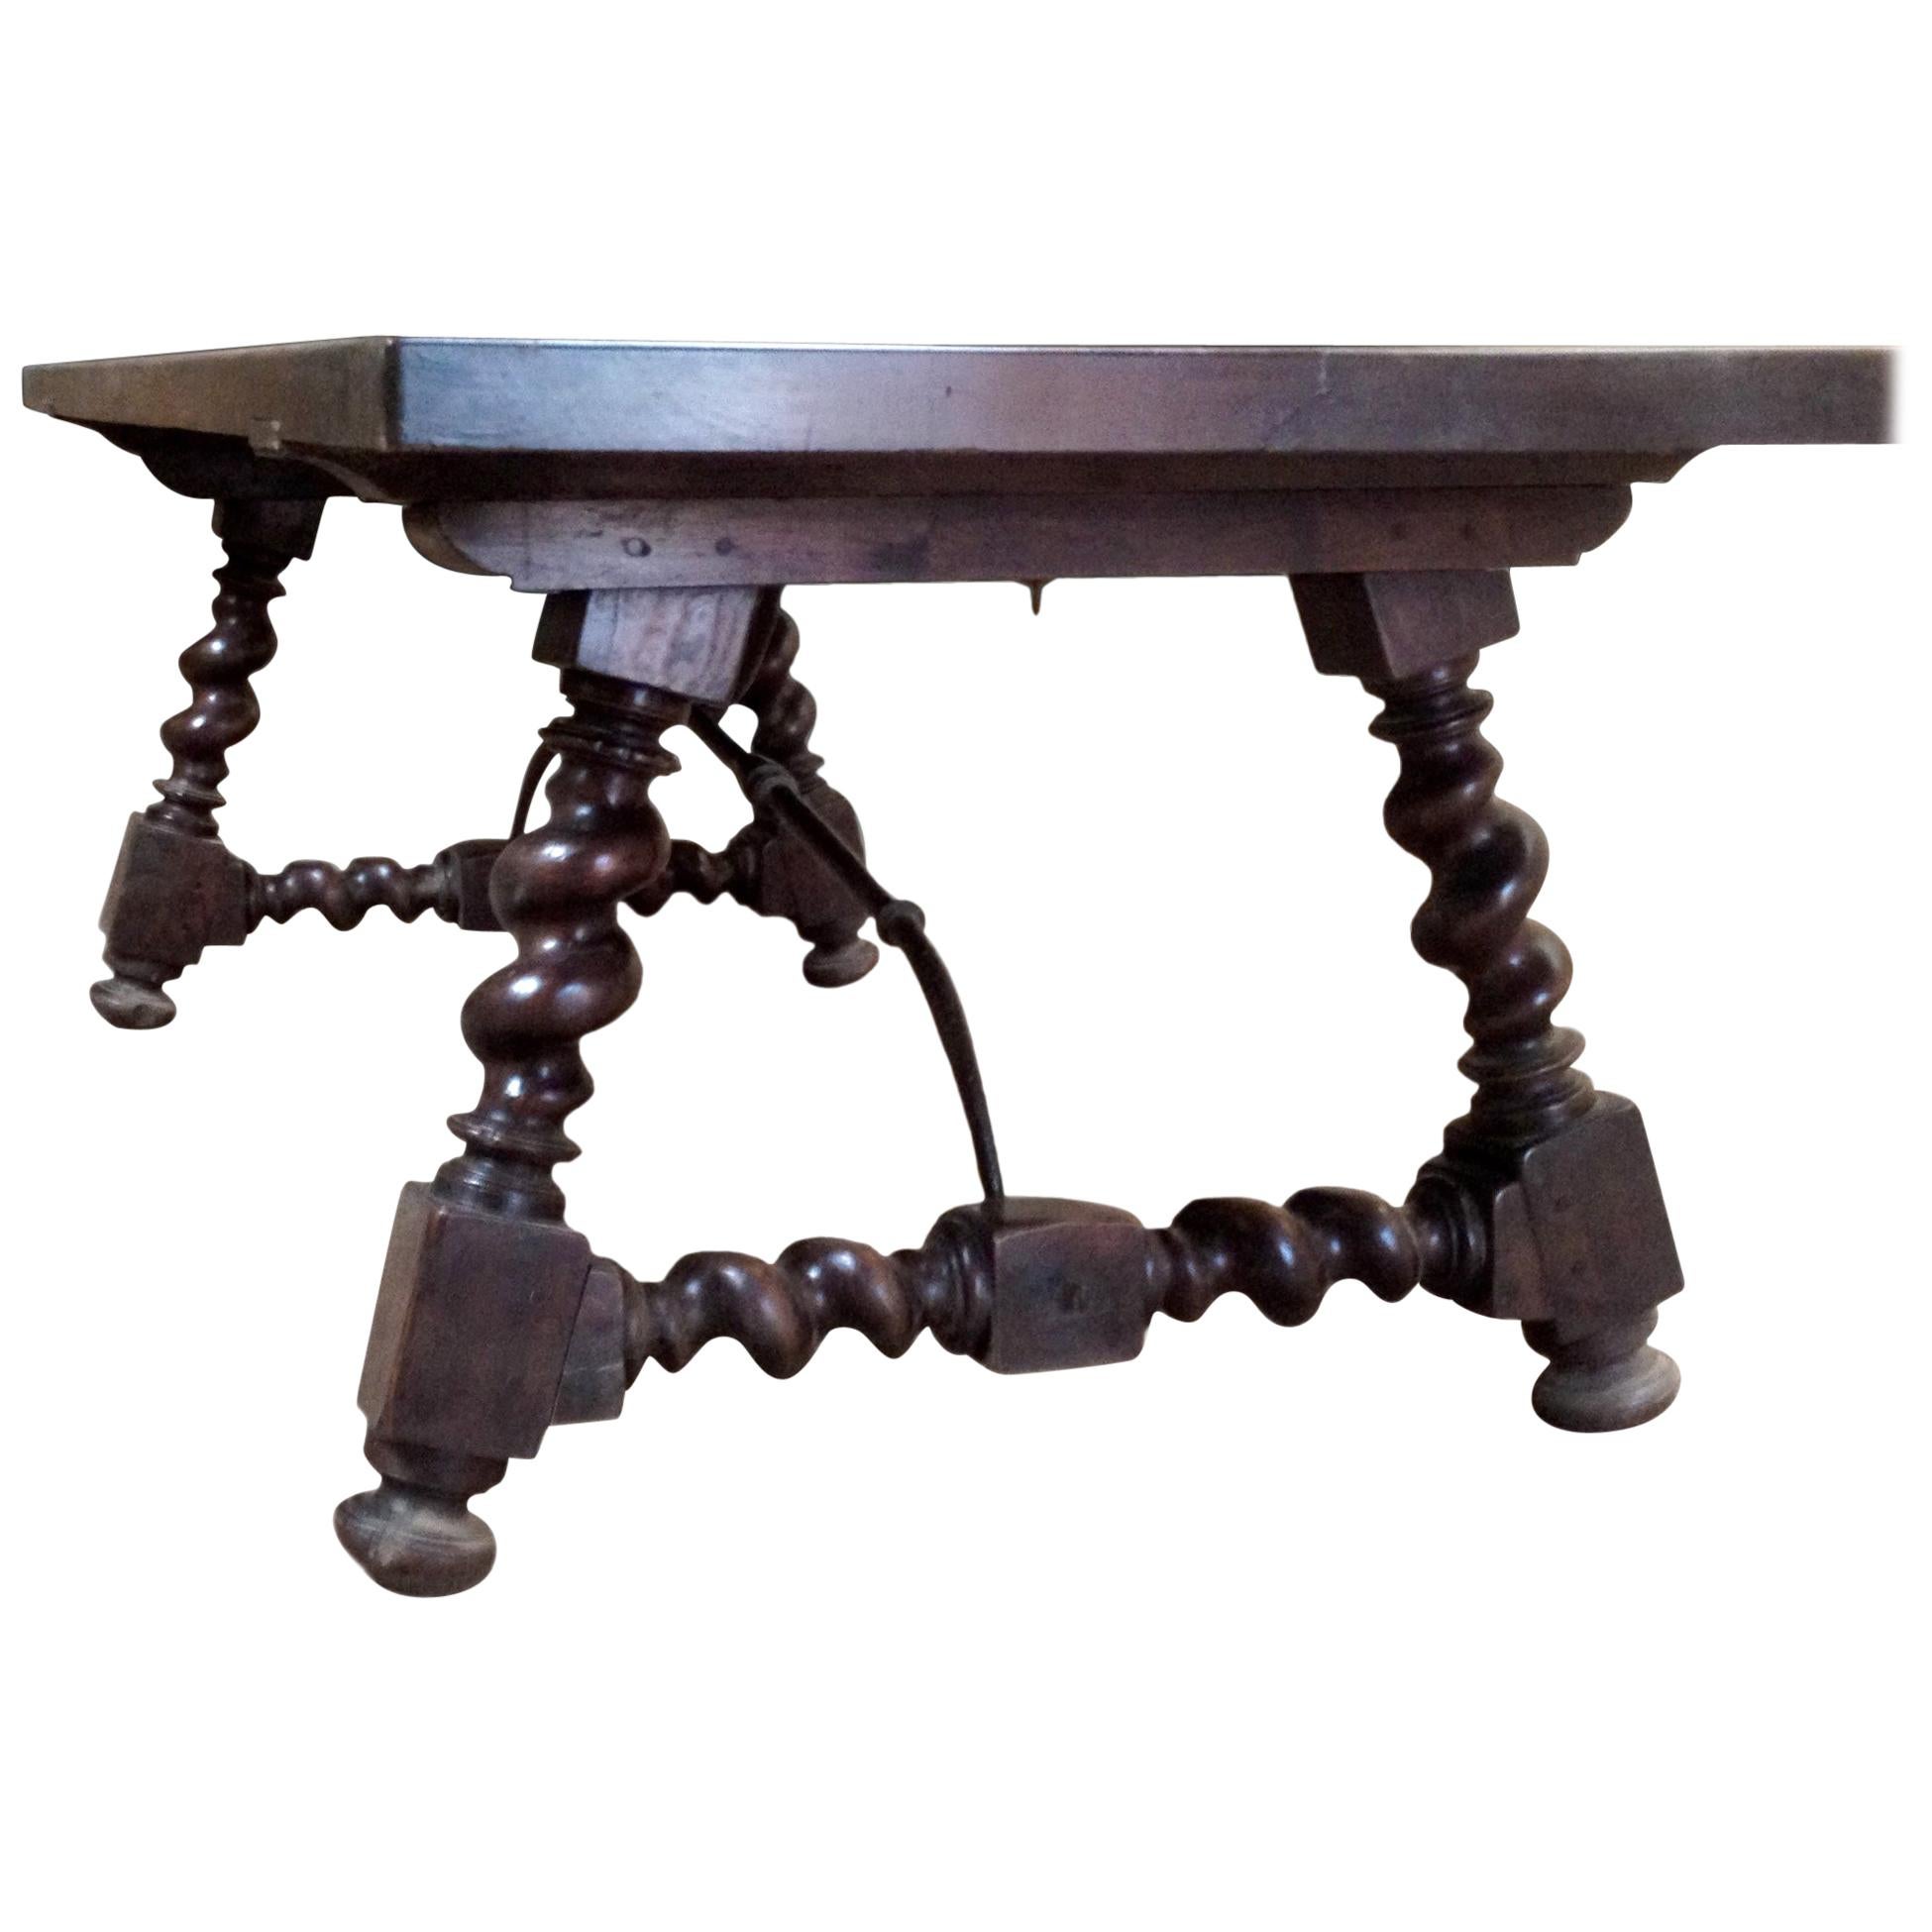 Tisch mit salomonischen Beinen aus Walnussholz, Metall 20. Jahrhundert